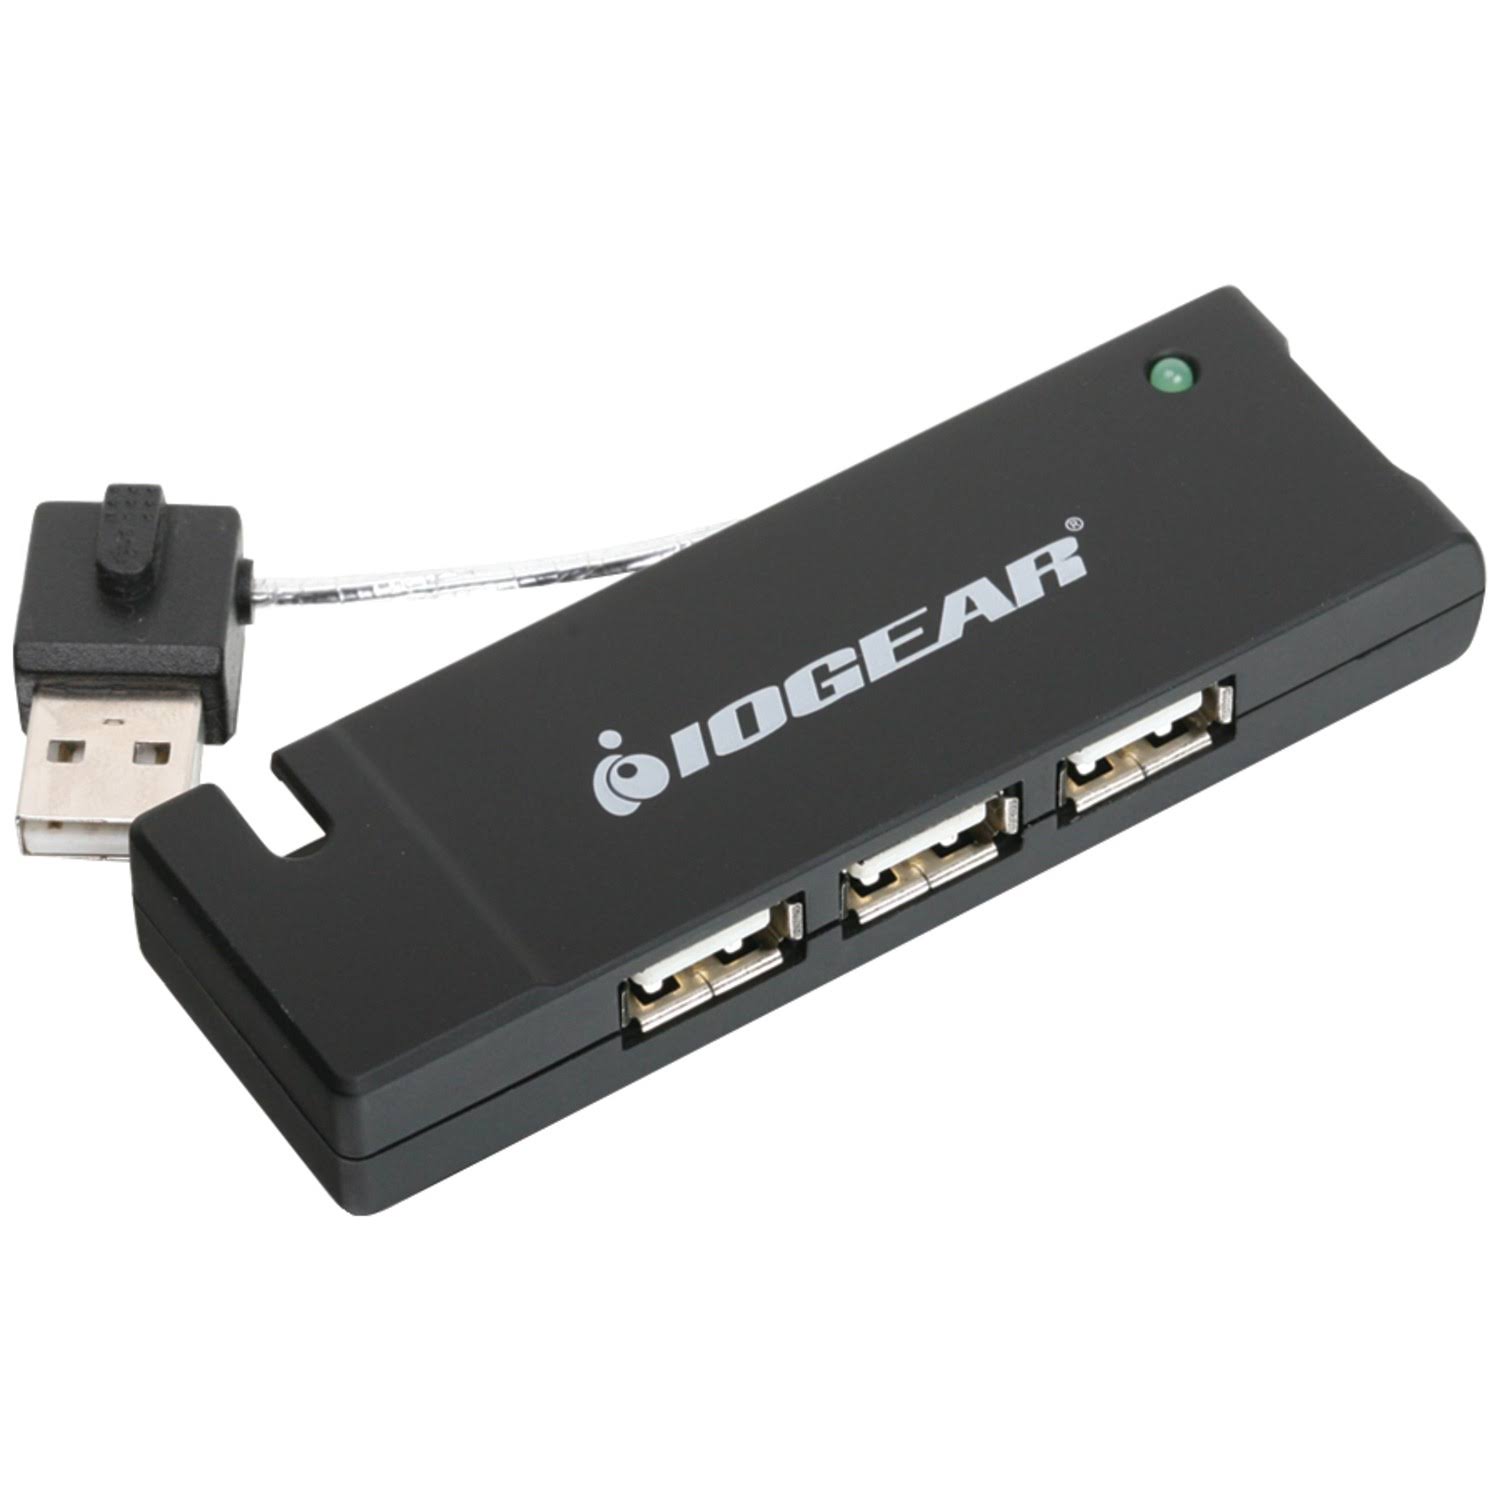 IOGEAR GUH285 USB 2.0 4-Port Hub